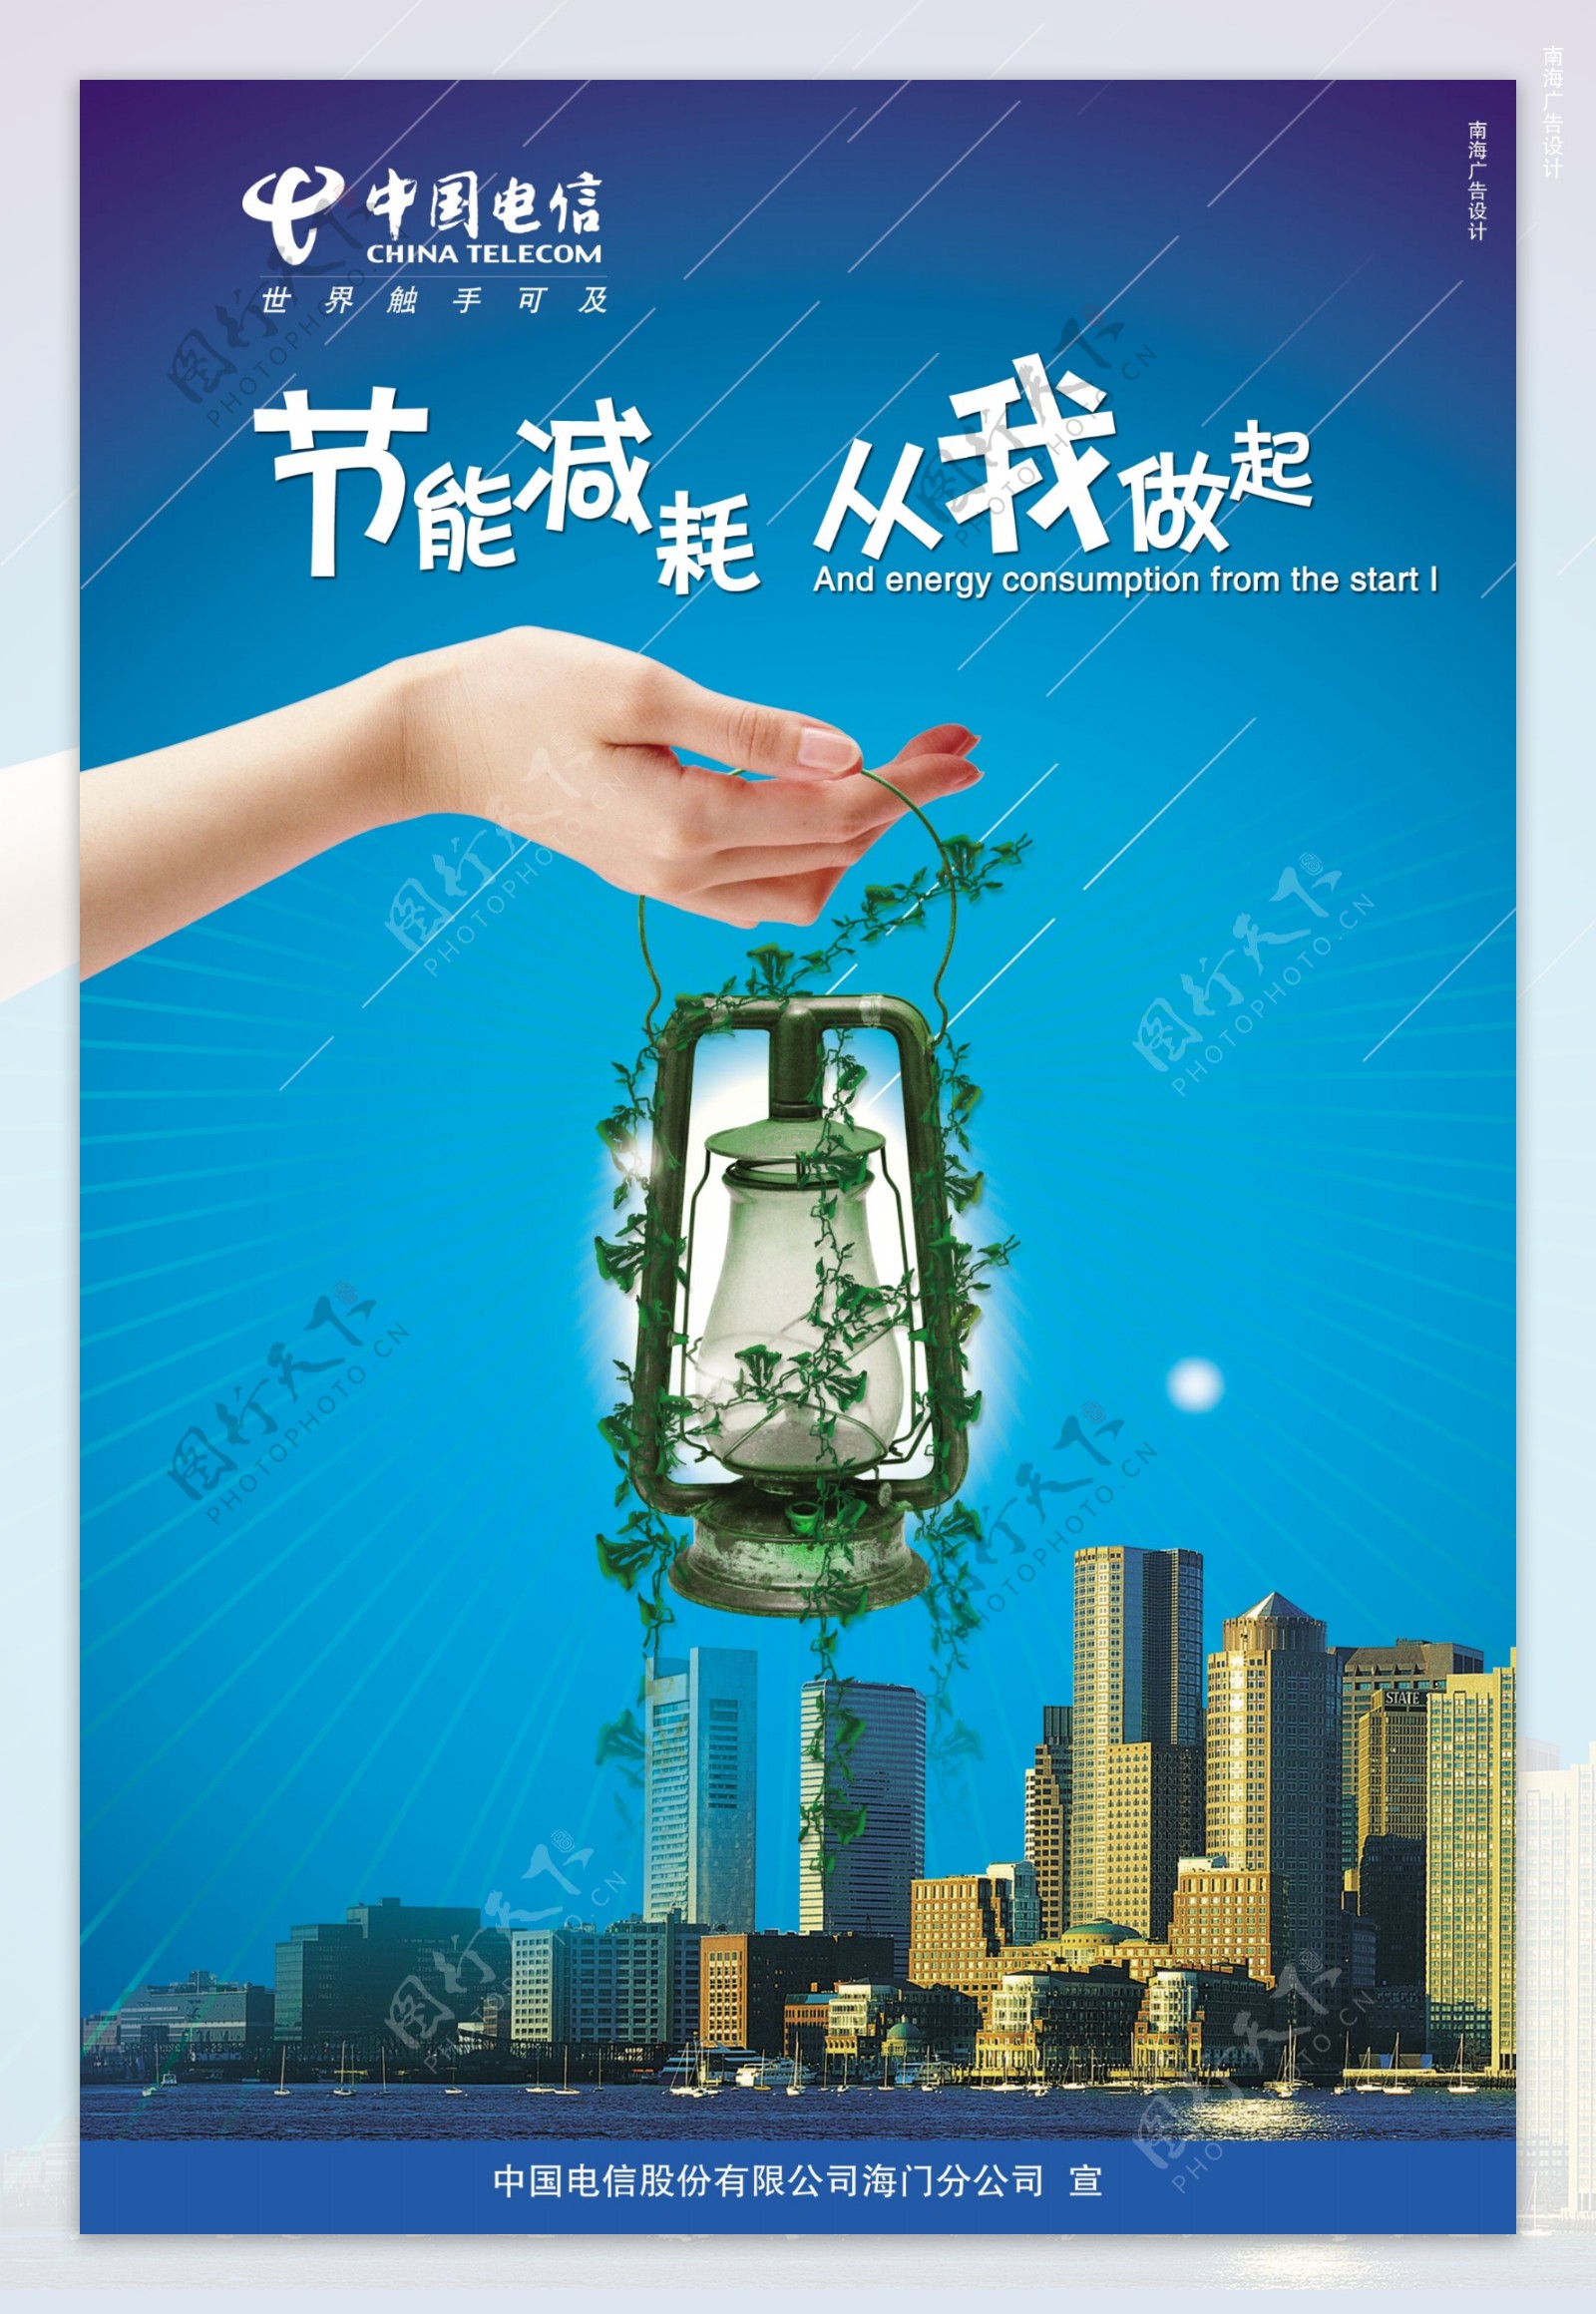 龙腾广告平面广告PSD分层素材源文件中国电信节能手